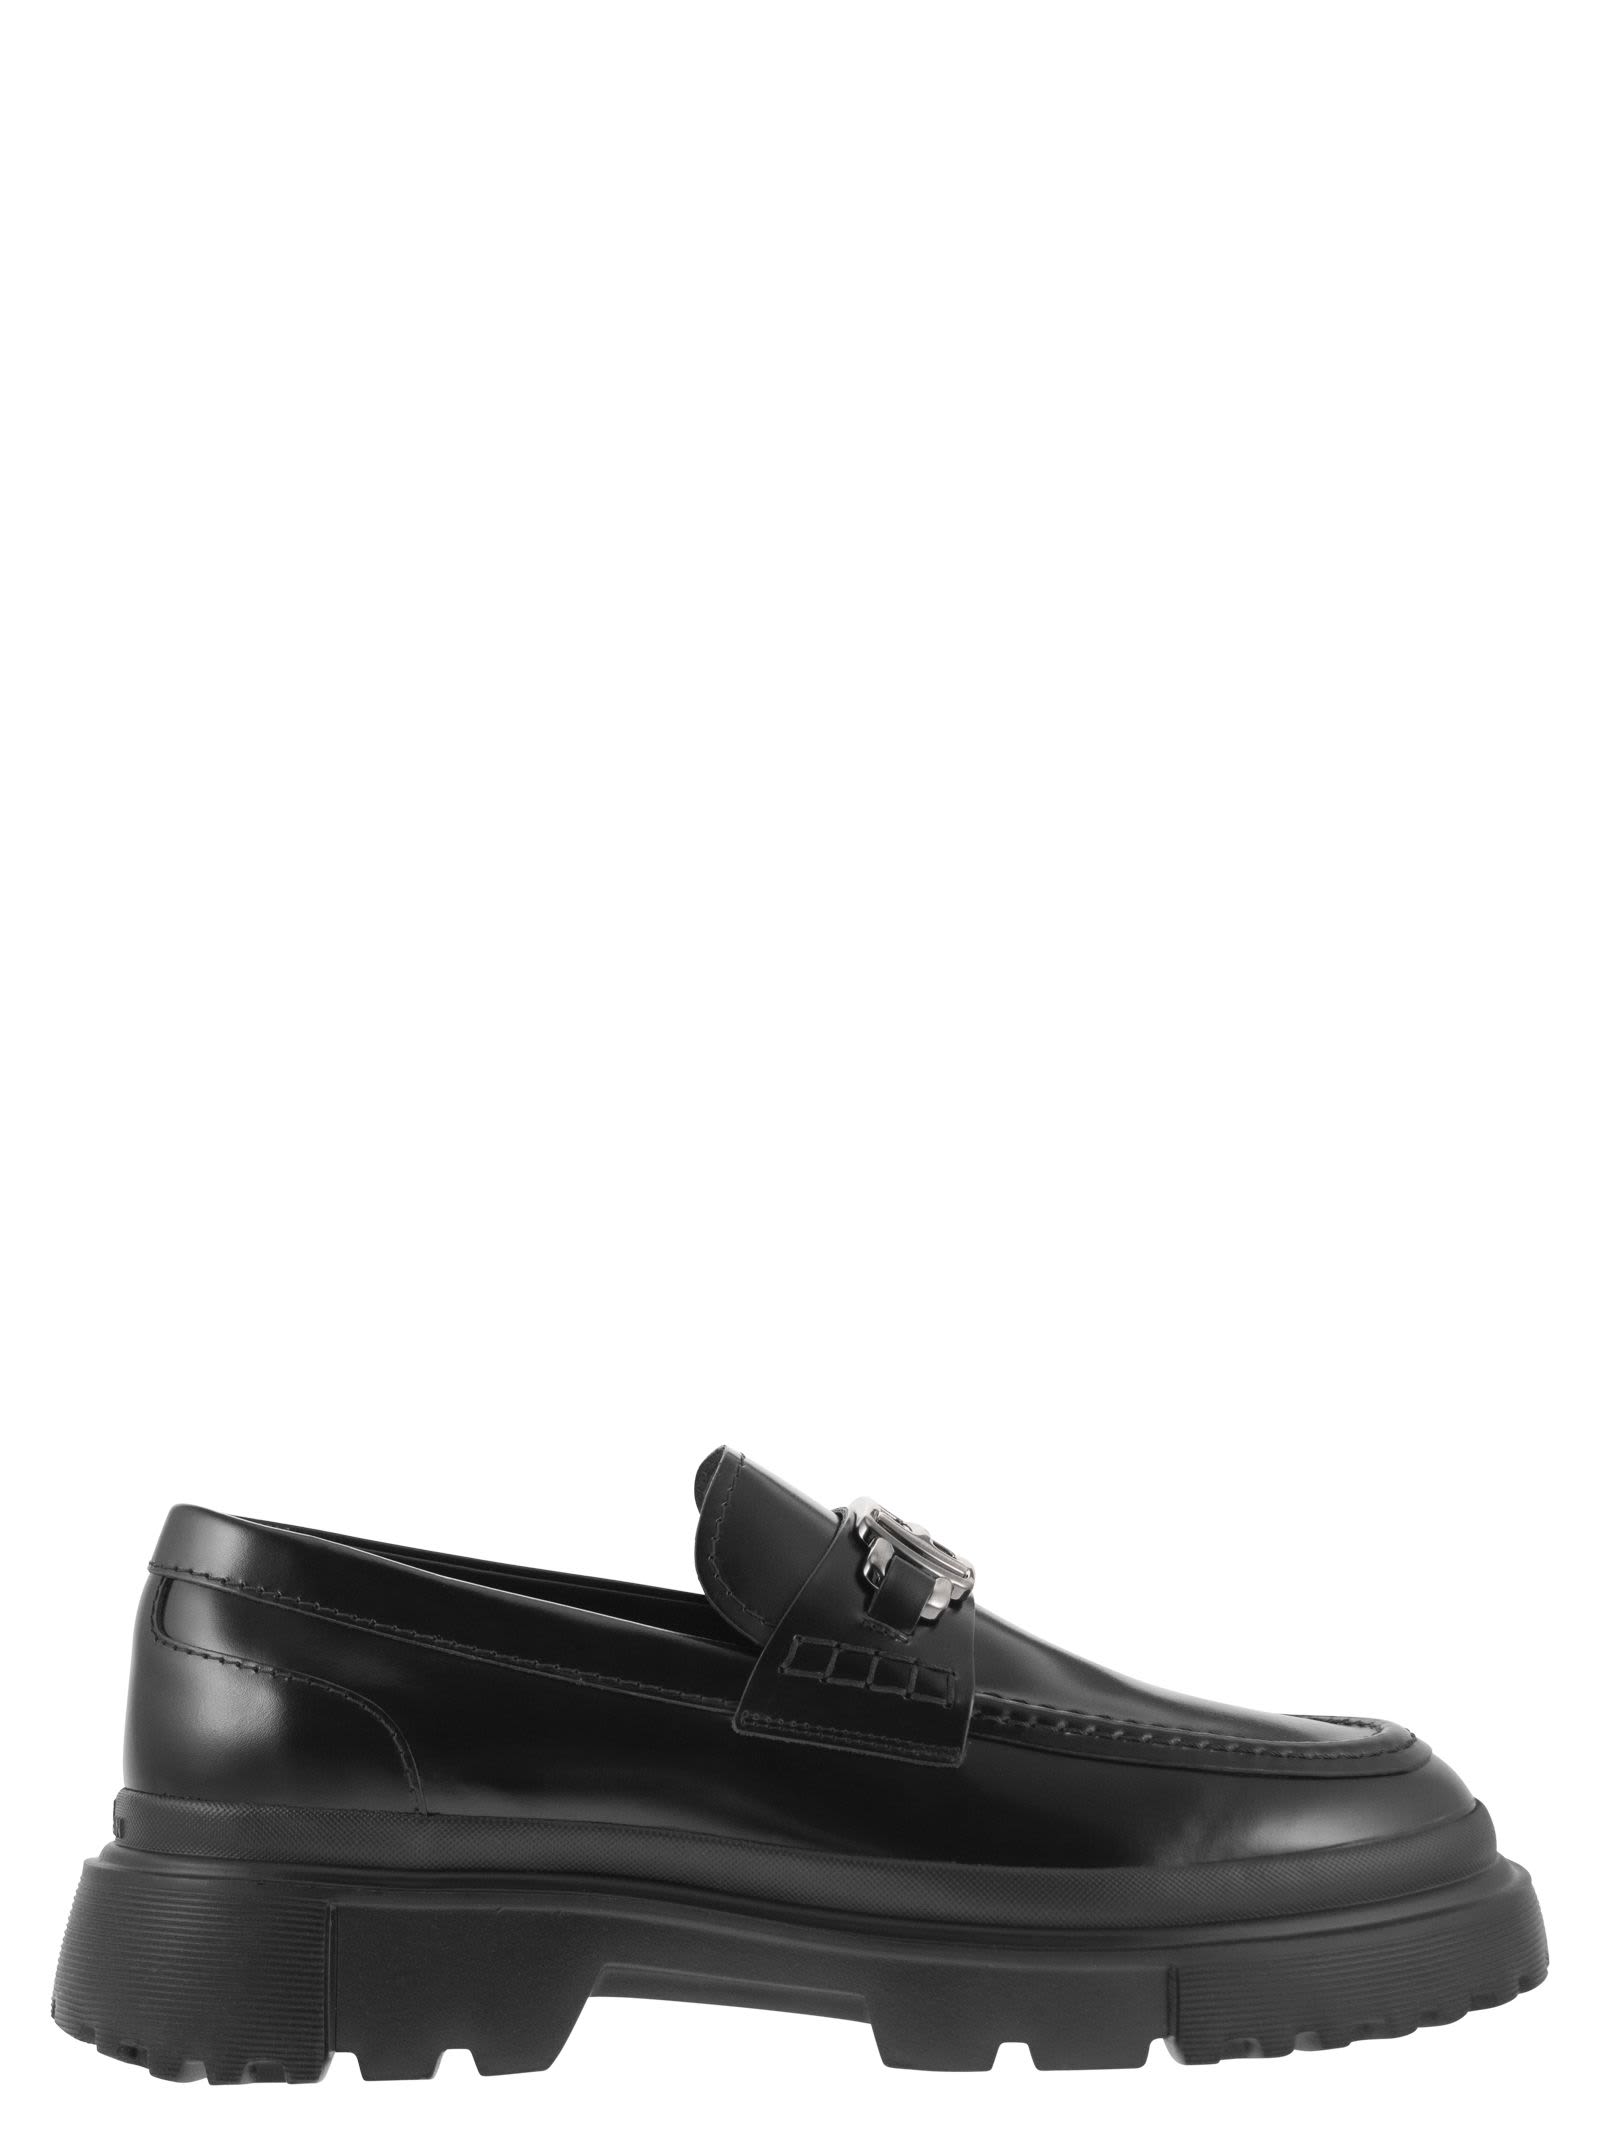 Hogan H629 - Leather Loafer In Black